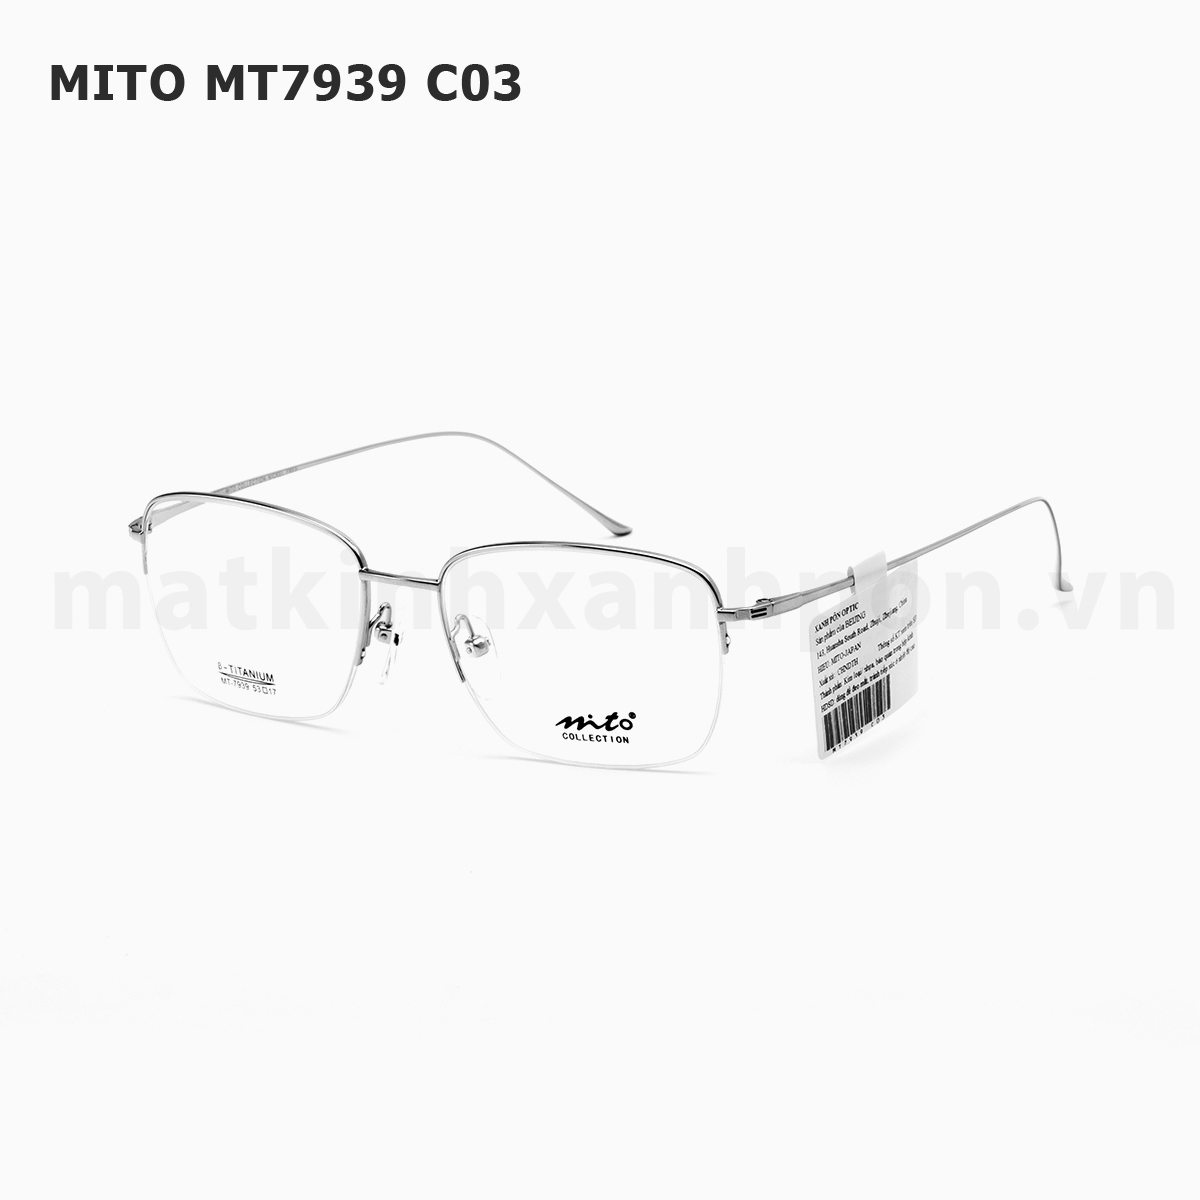 Mito MT7939 C03